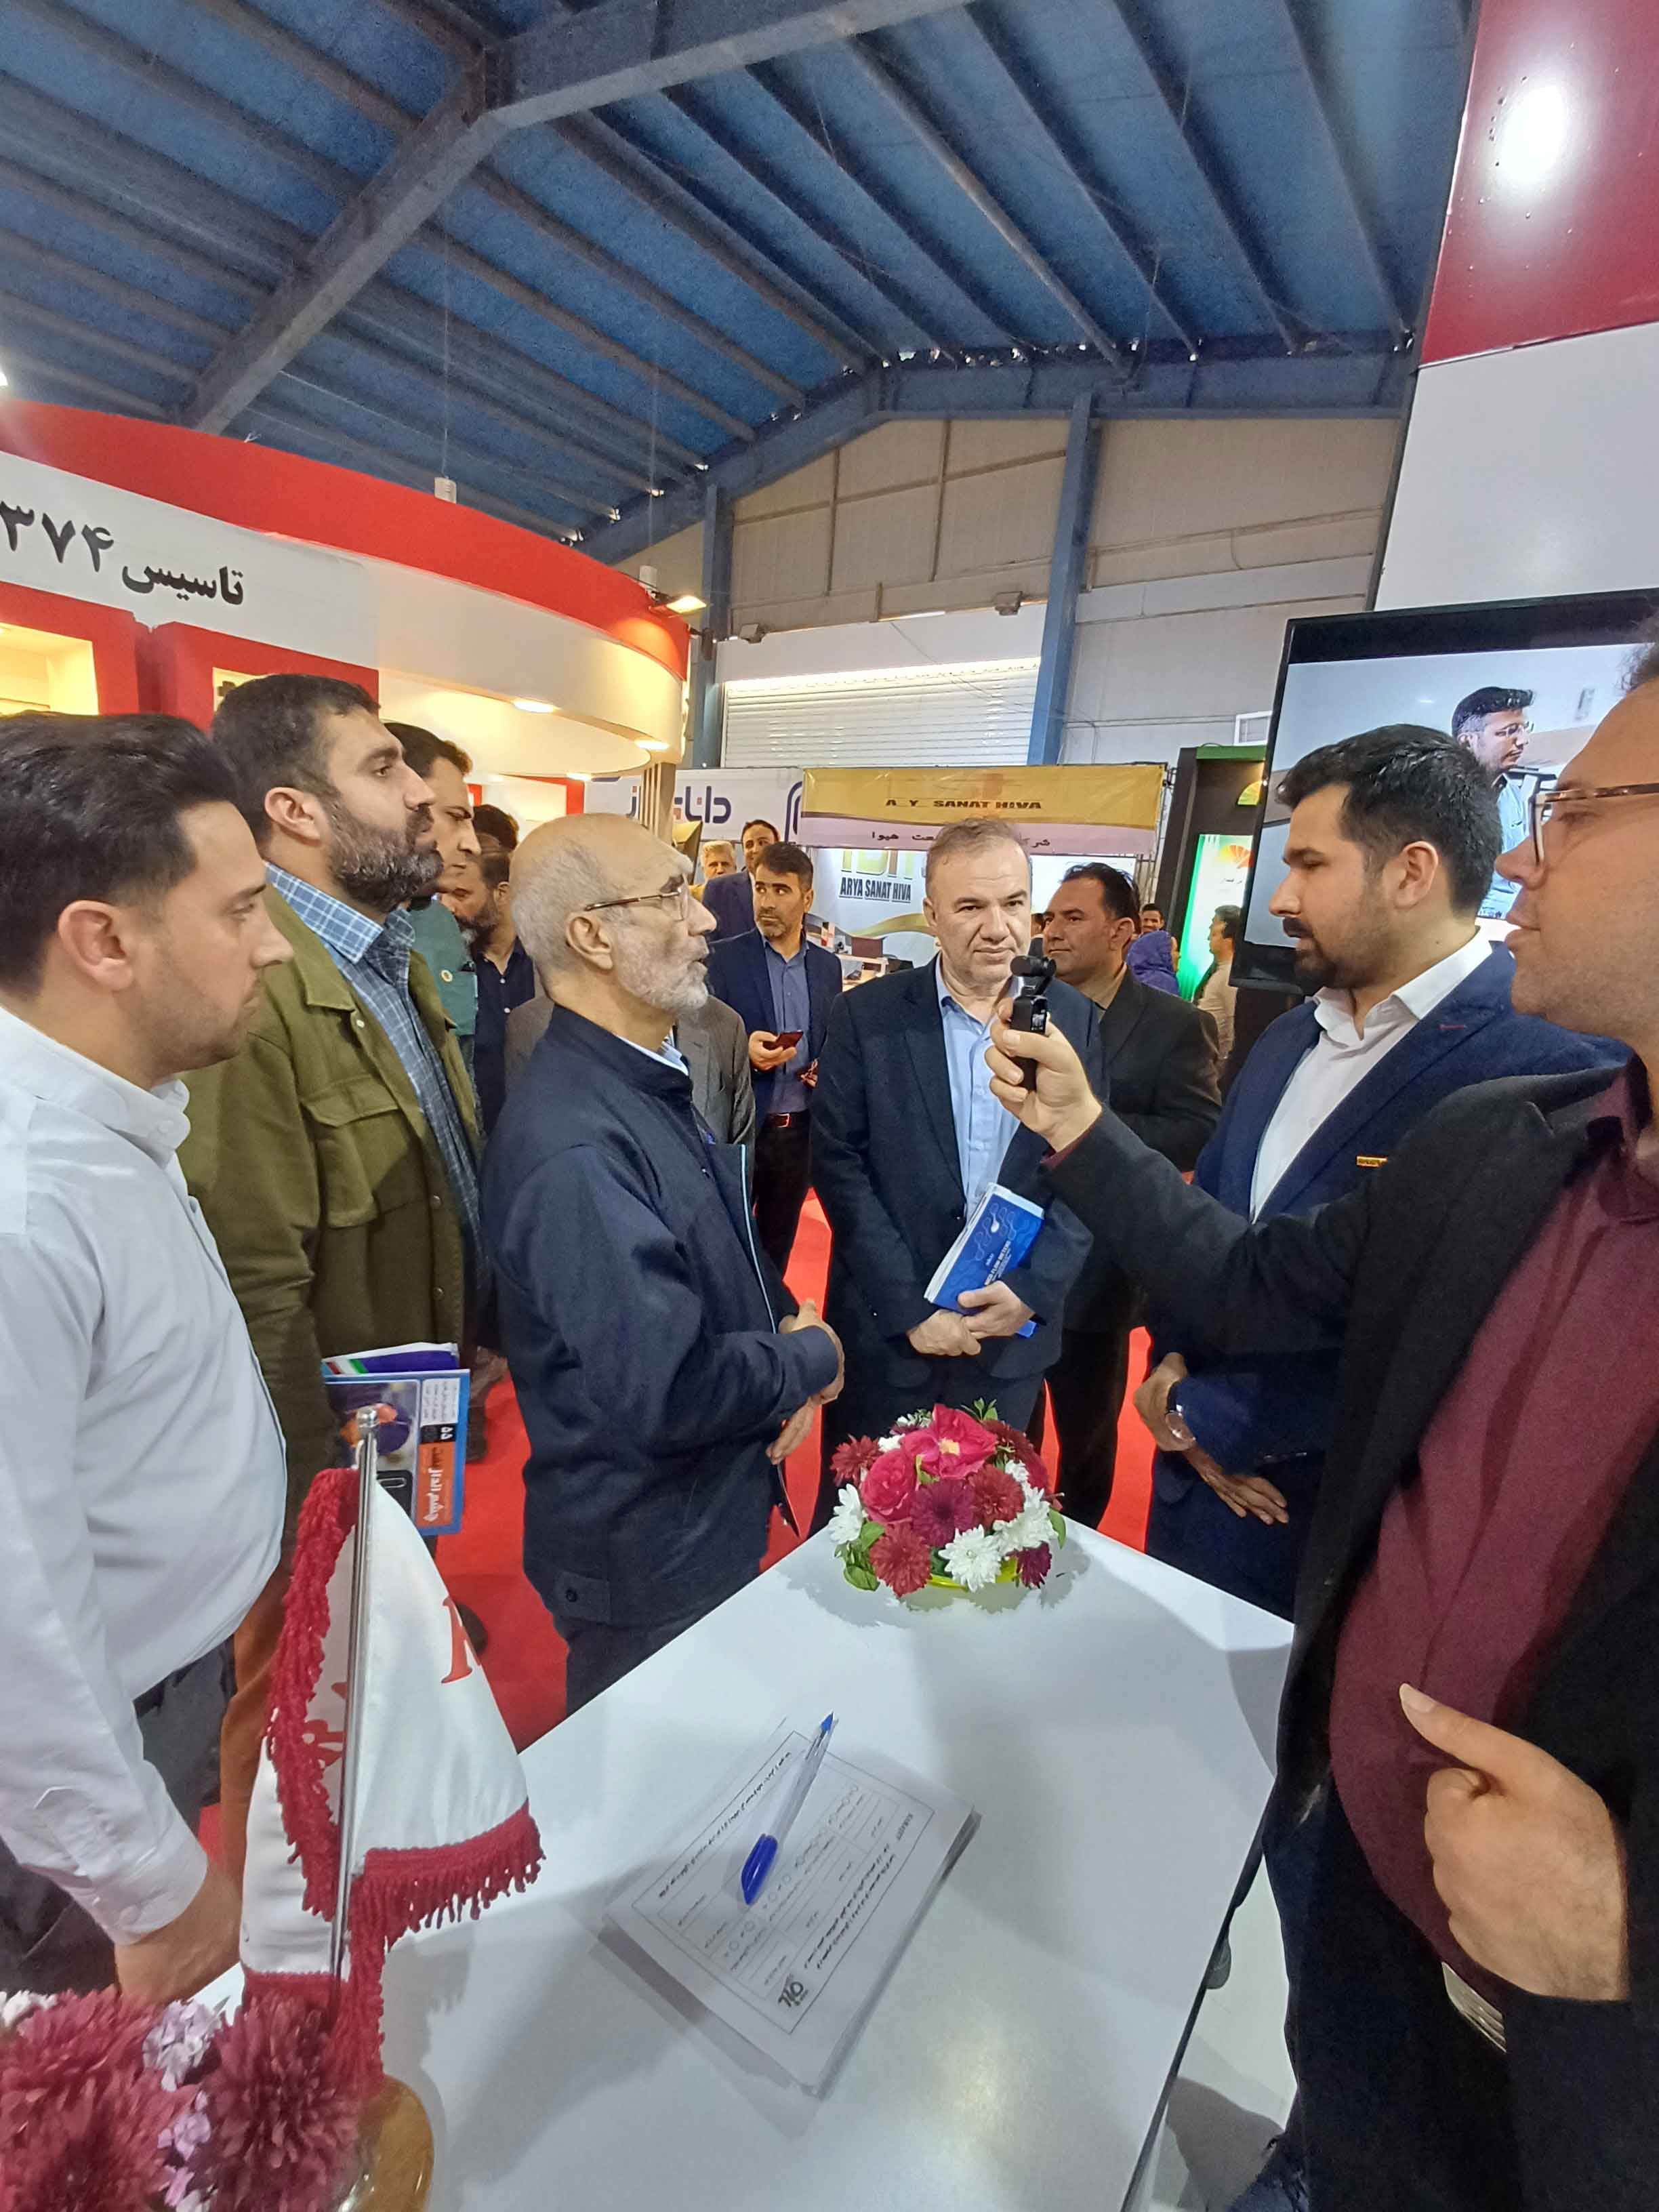 حضور شرکت کاراجت در نمایشگاه خوزستان